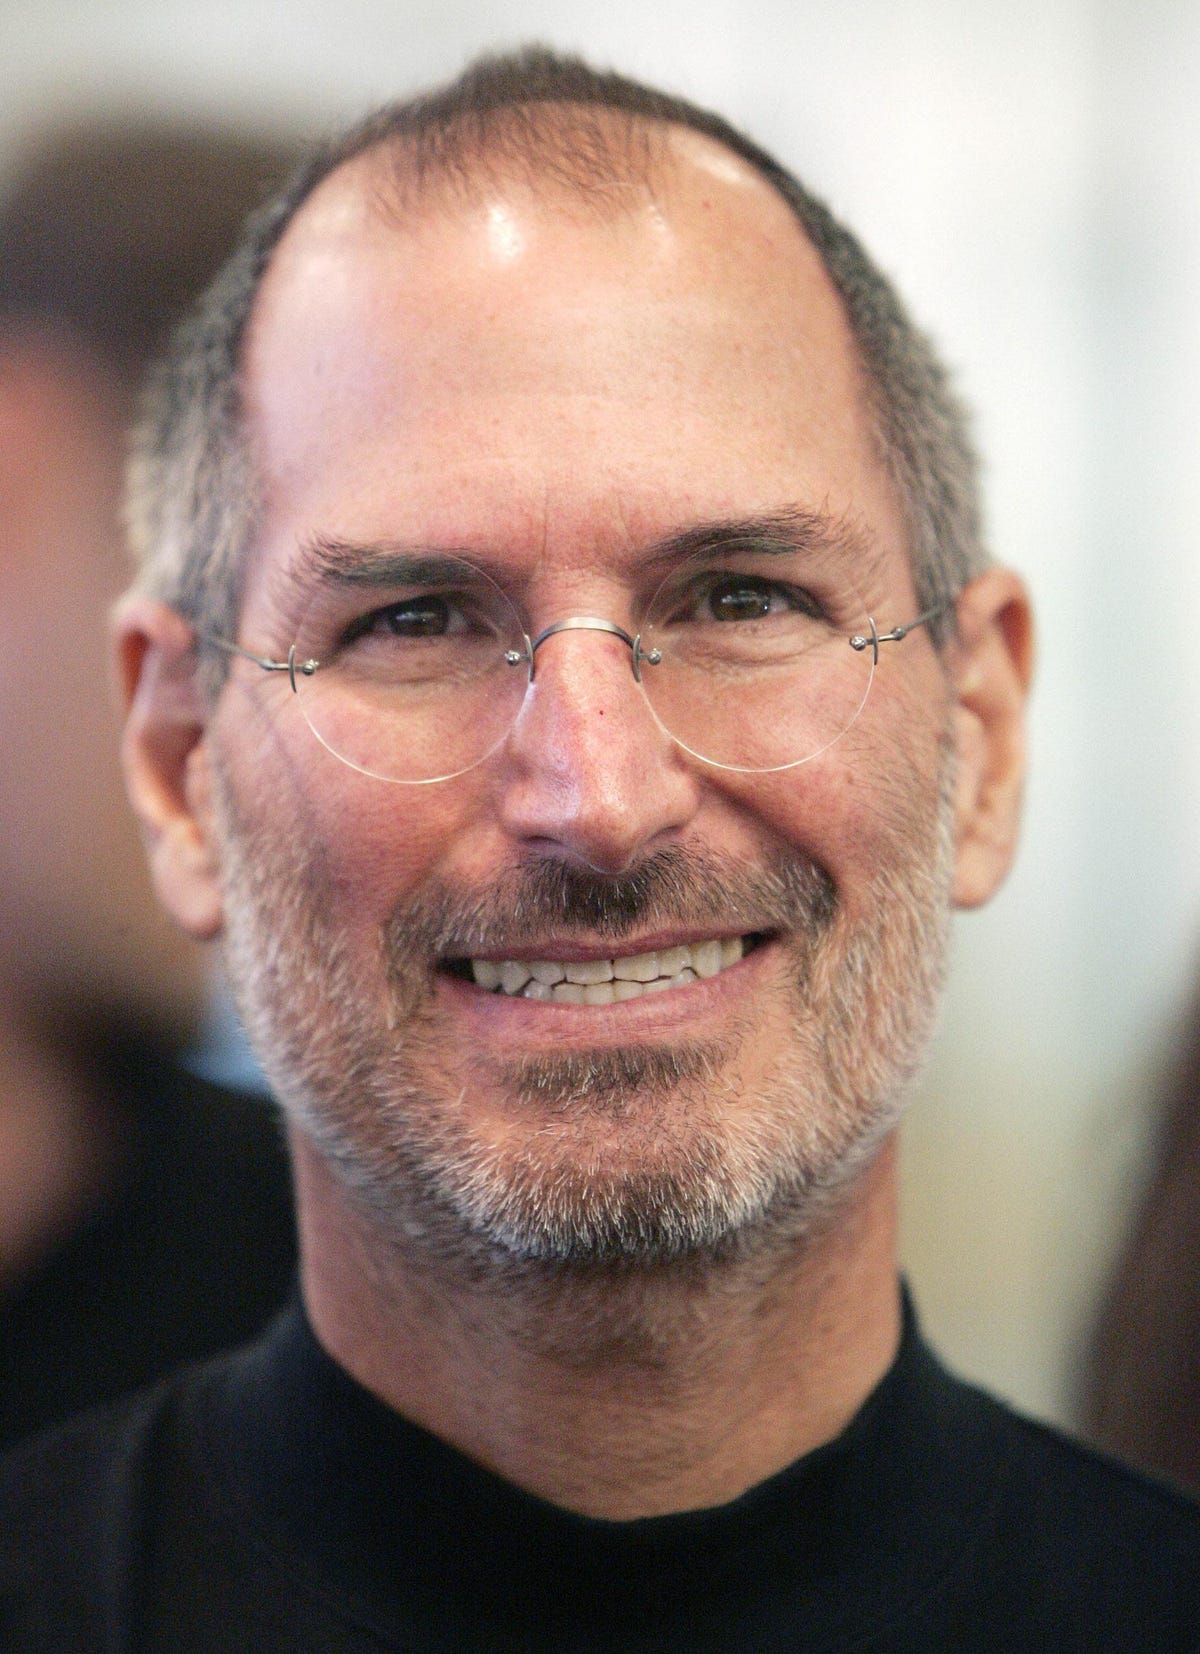 Detail Image Of Steve Jobs Nomer 14